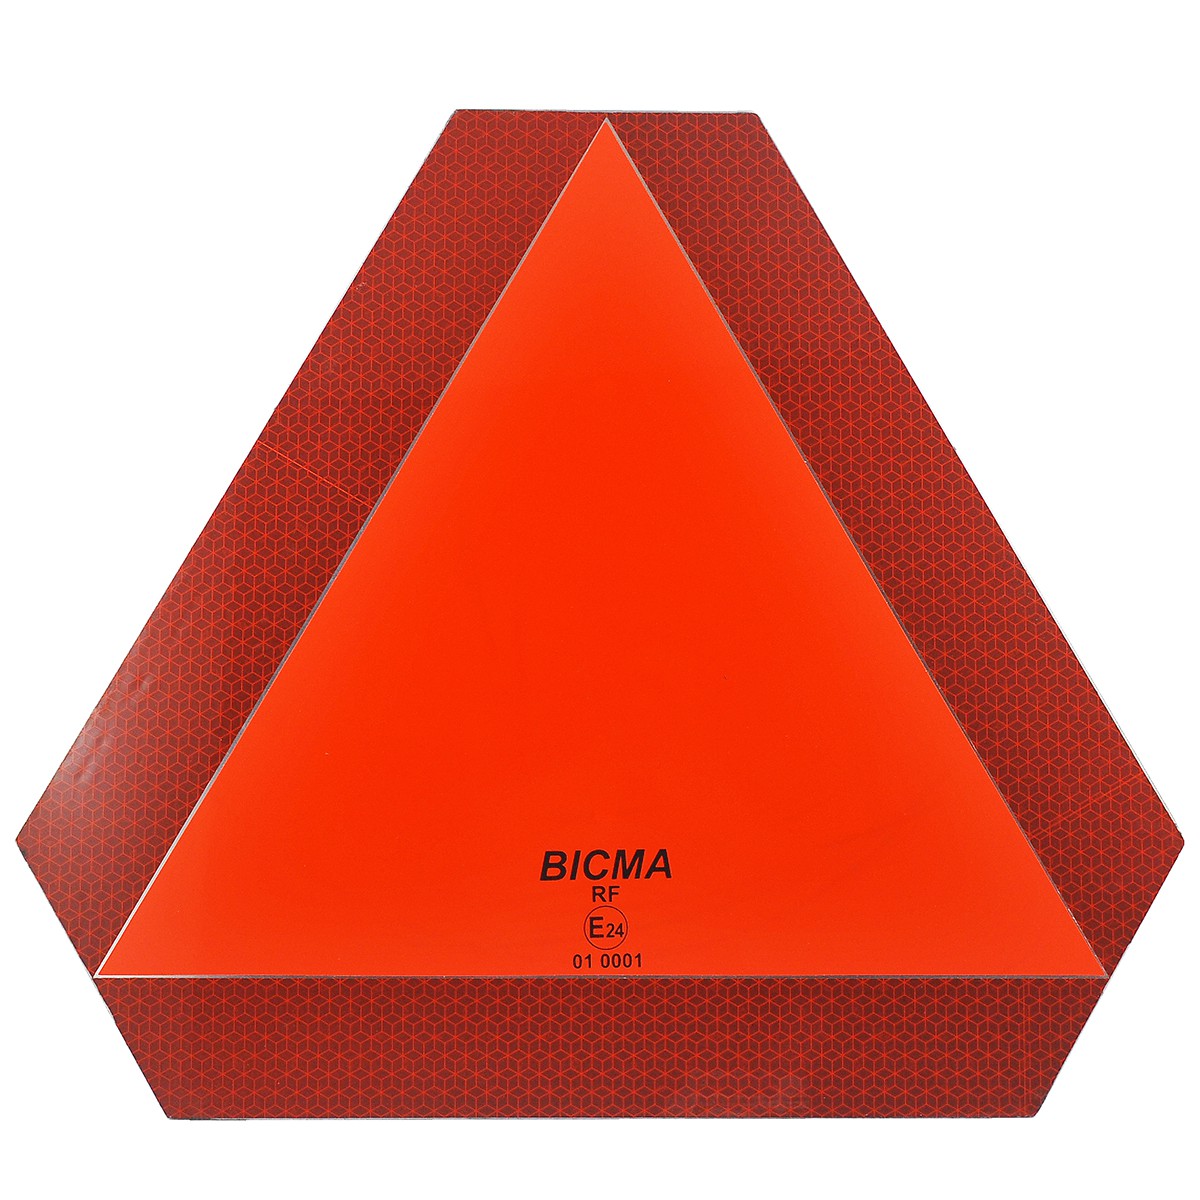 Reflexný trojuholník na príves / ECE 69 01 / E24 / 40-70070 / 01 0001 / BICMA